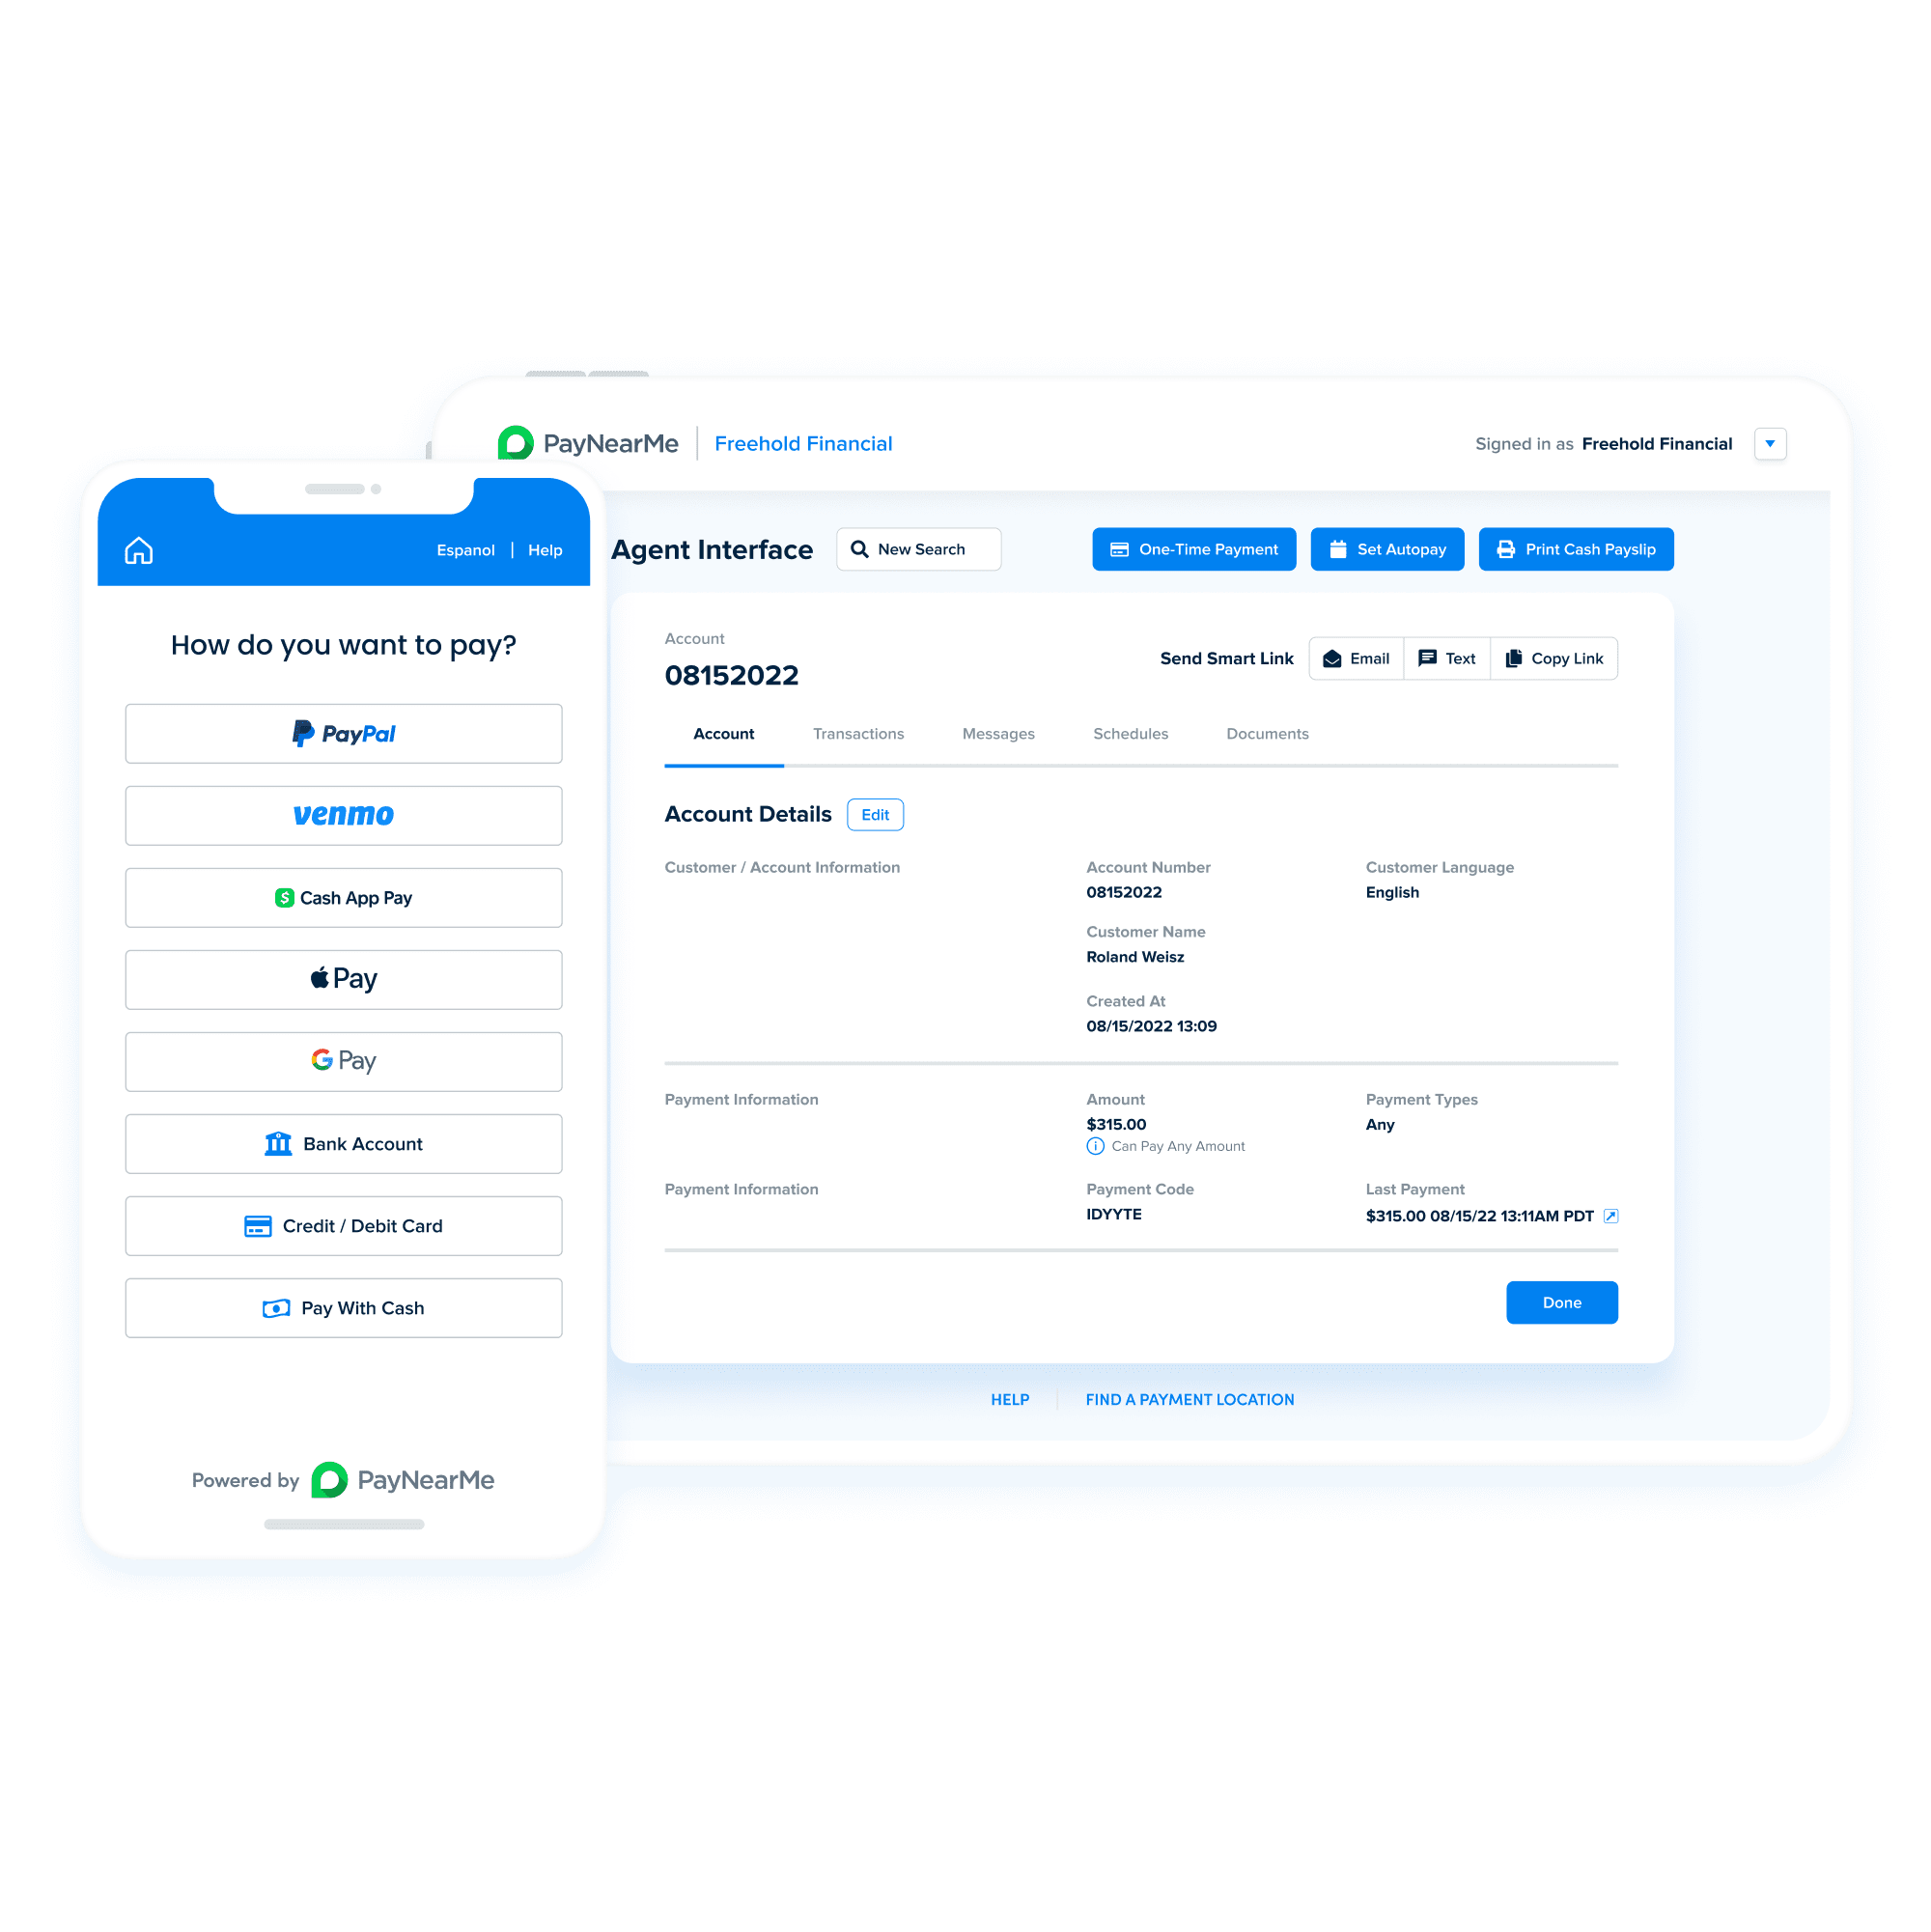 PayNearMe’s innovative platform